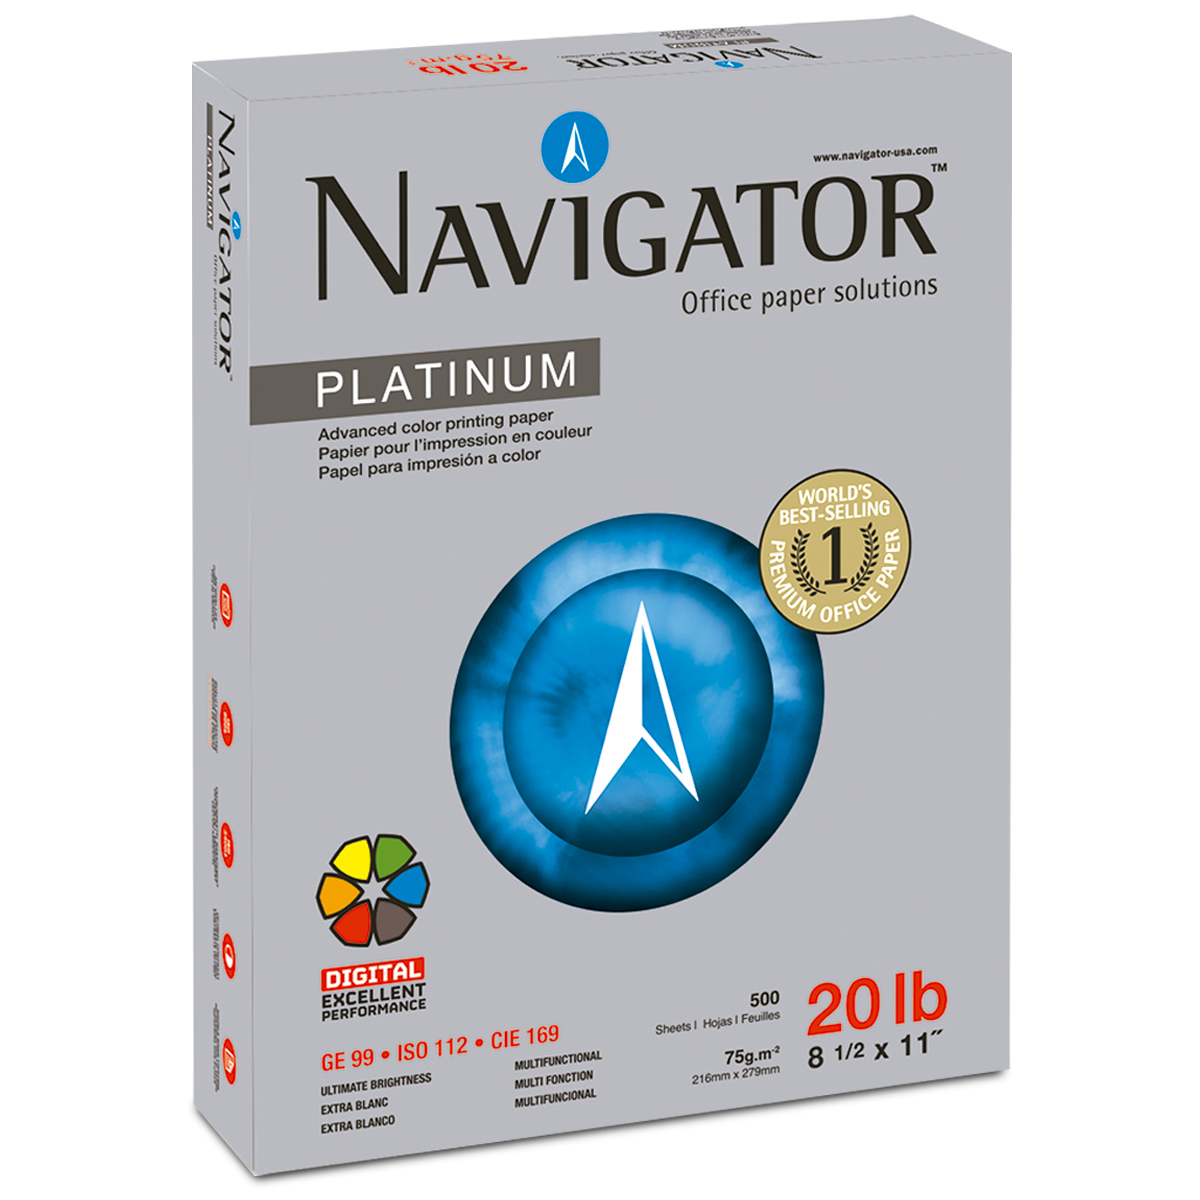 Papel Bond Carta Navigator Platinum Paquete 500 hojas blancas | Office Depot  Mexico